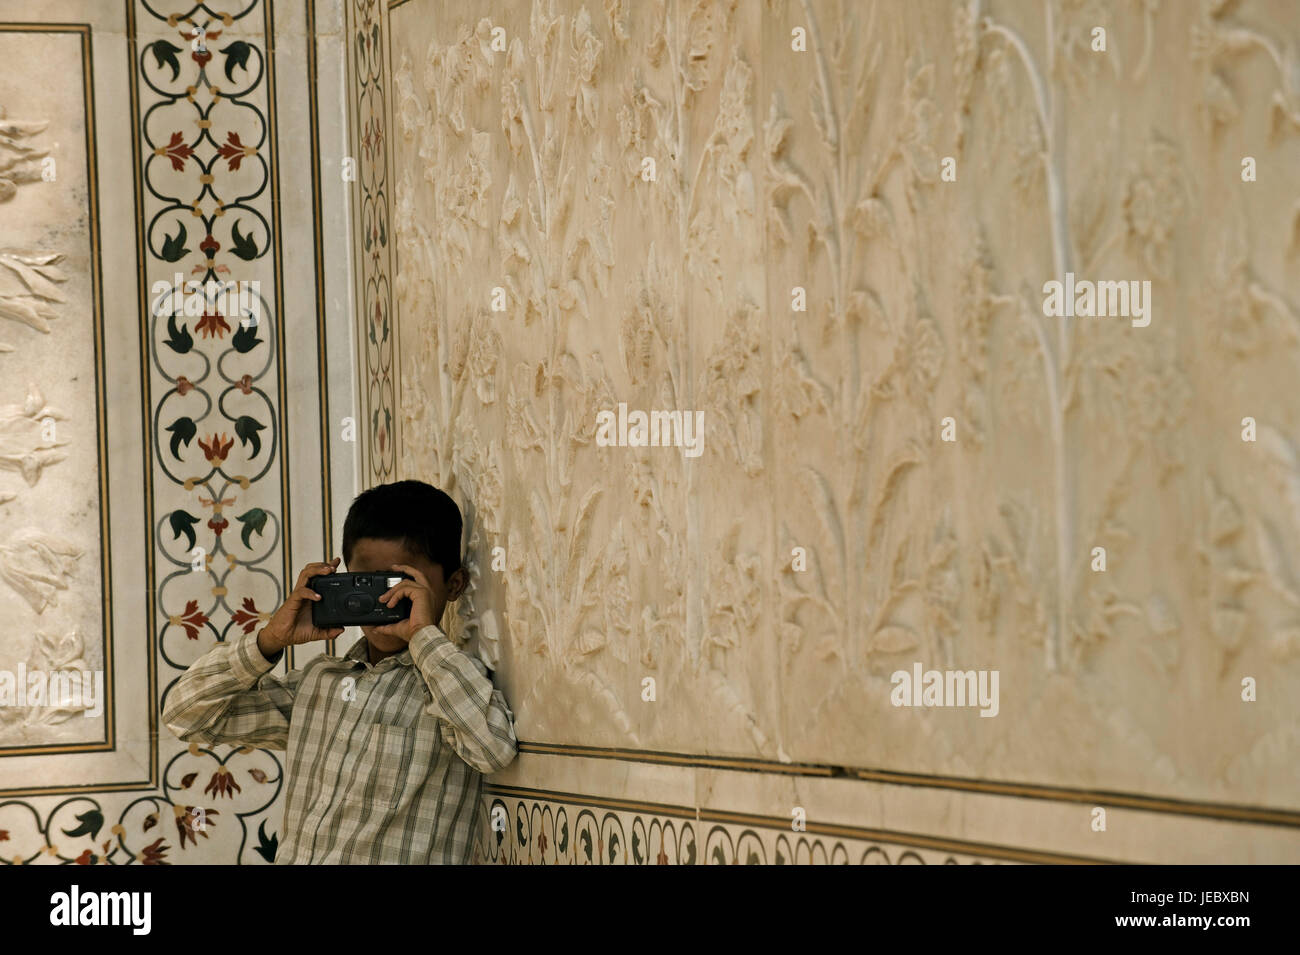 India, Uttar Pradesh, Agra, the Taj Mahal, small boy photographed, Stock Photo